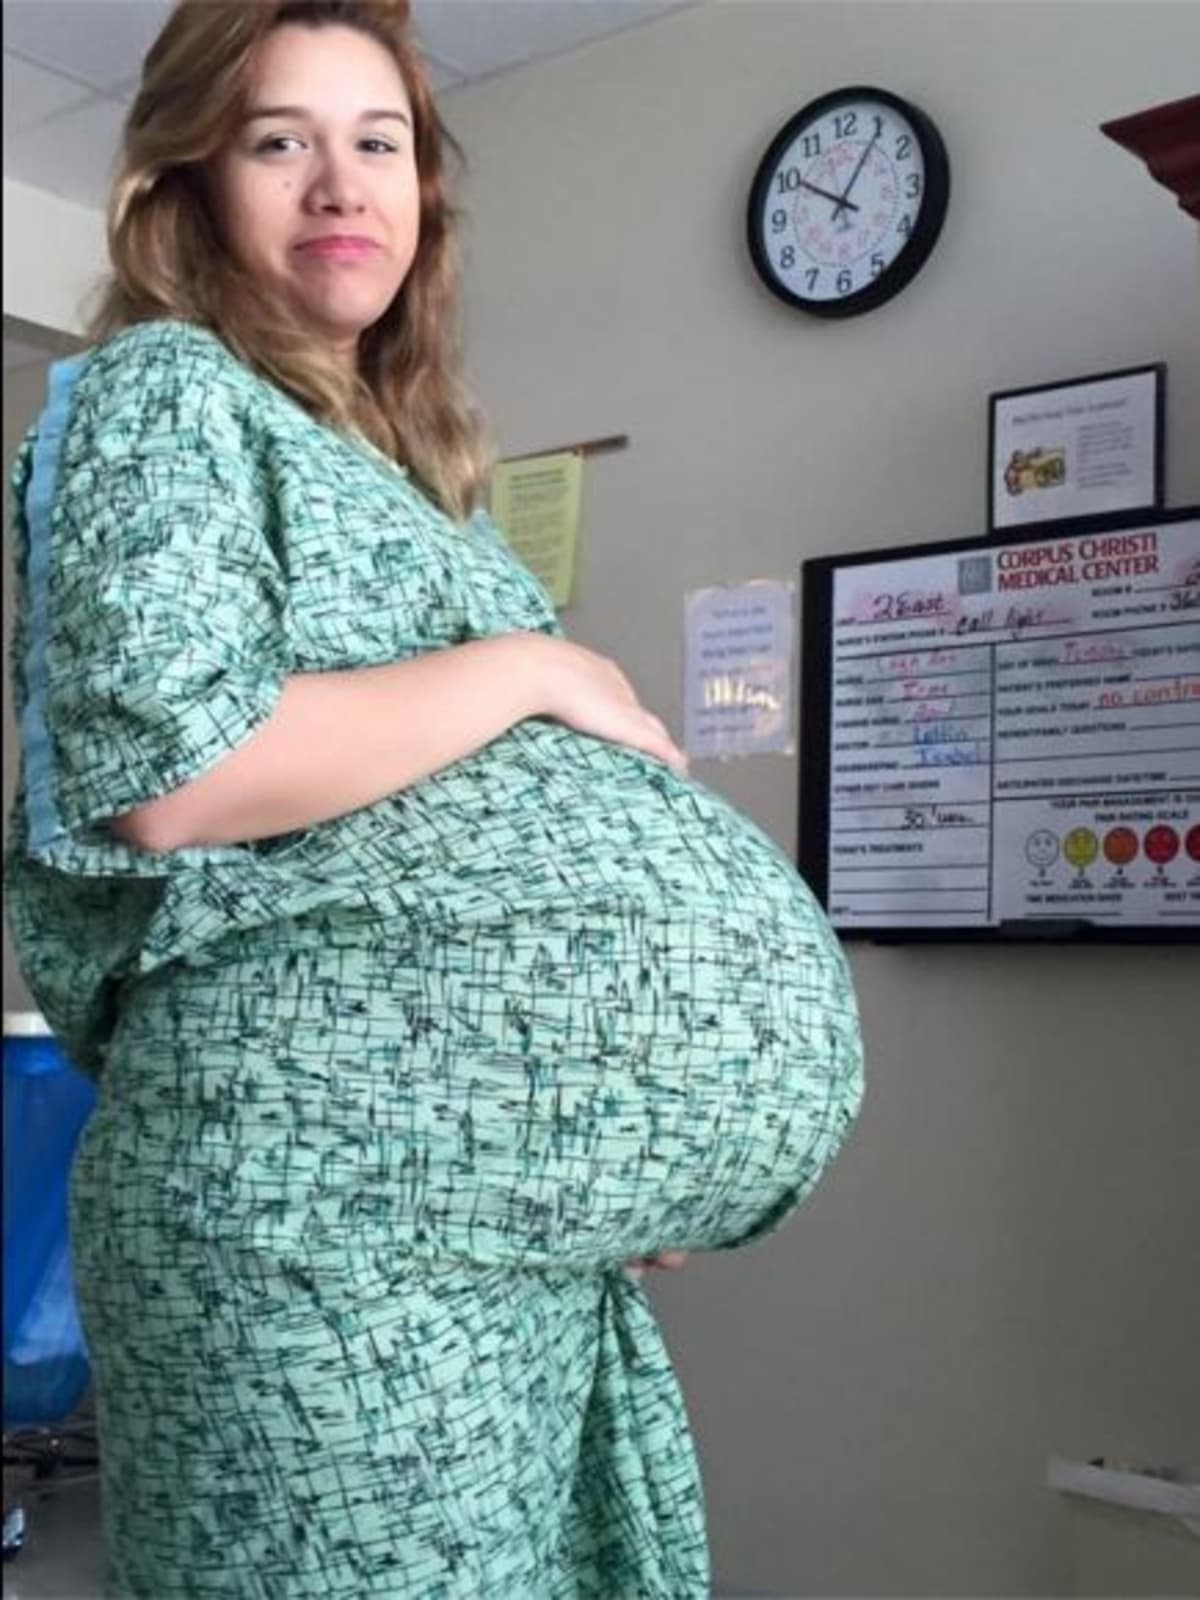 Maminka Silvia Hernadez (23 let) se o tom, že čeká trojčata, z čehož dvě jsou srostlá, dozvěděla ve třetím měsíci těhotenství.